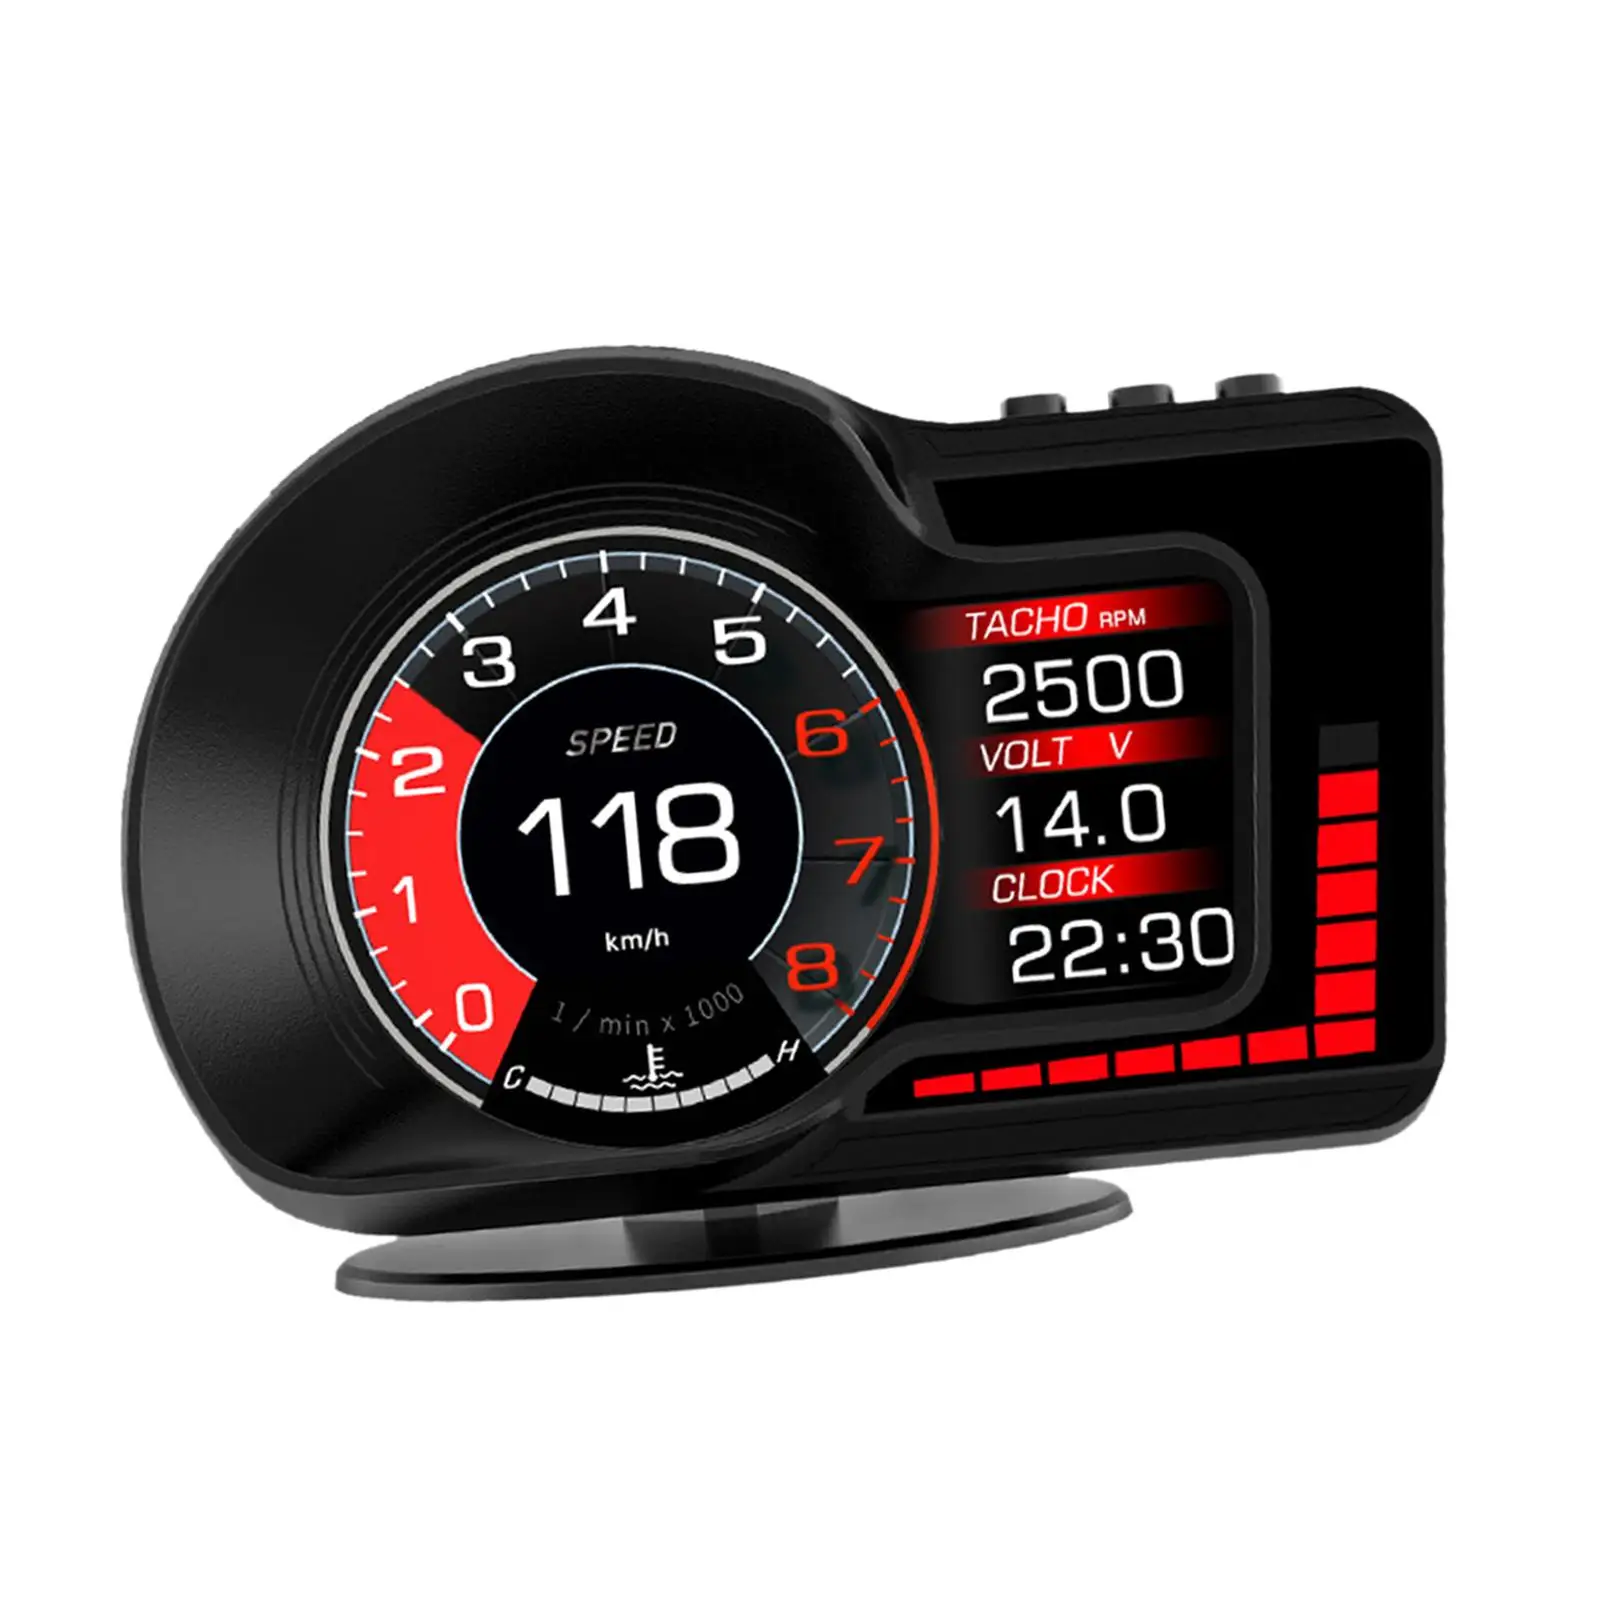 מכונית תצוגה עילית האד OBD2 GPS עמיד אביזרי רכב רב תפקודי הצג עייפות בנהיגה תזכורת מהירות יתר אזעקה - 4